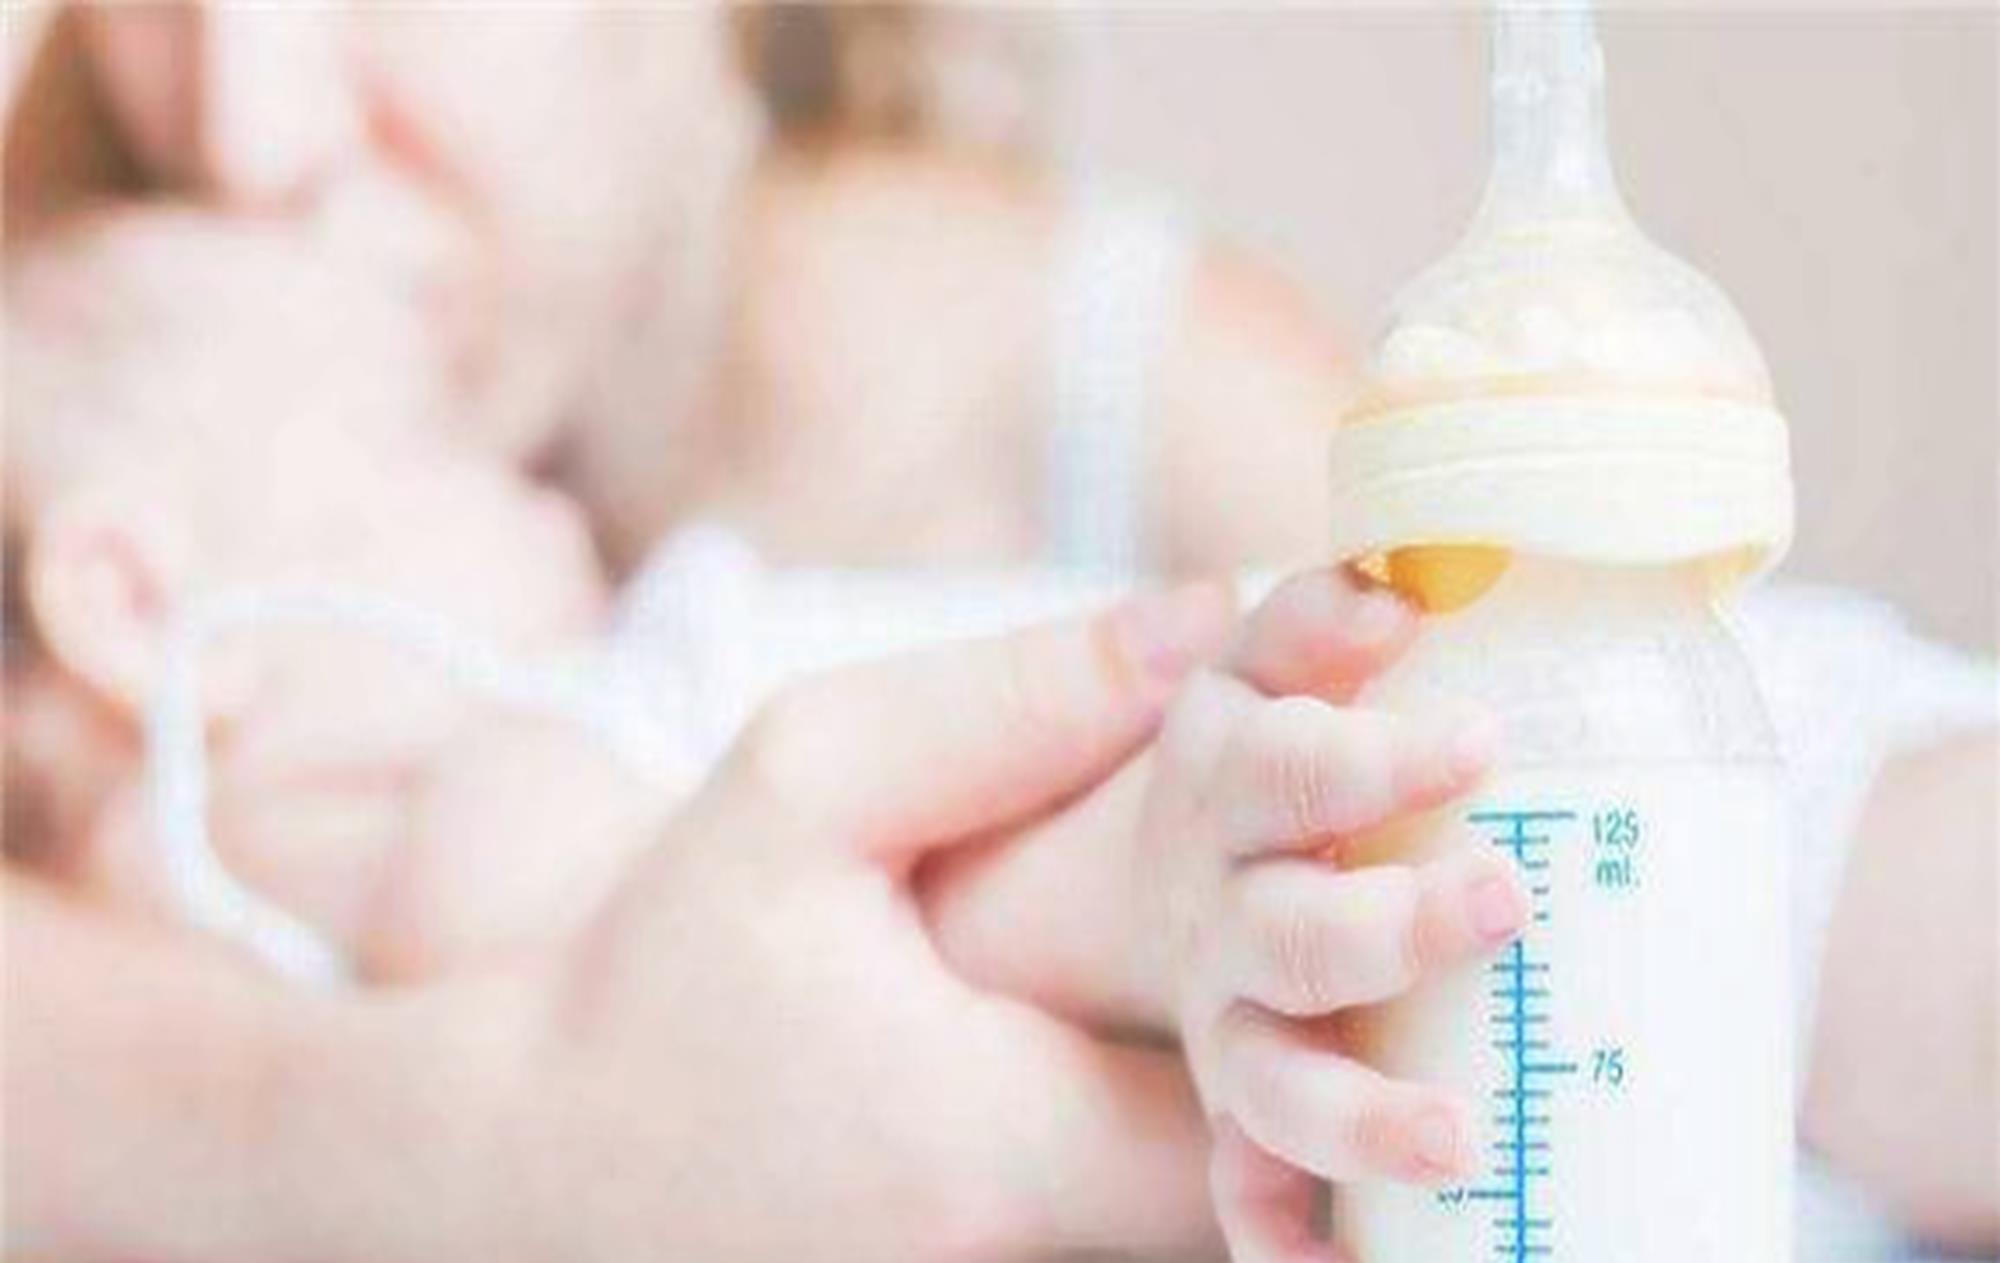 【母乳保存】母乳保存冷冻、解冻加热的具体方法及注意事项 -MamaClub – MAMACLUB